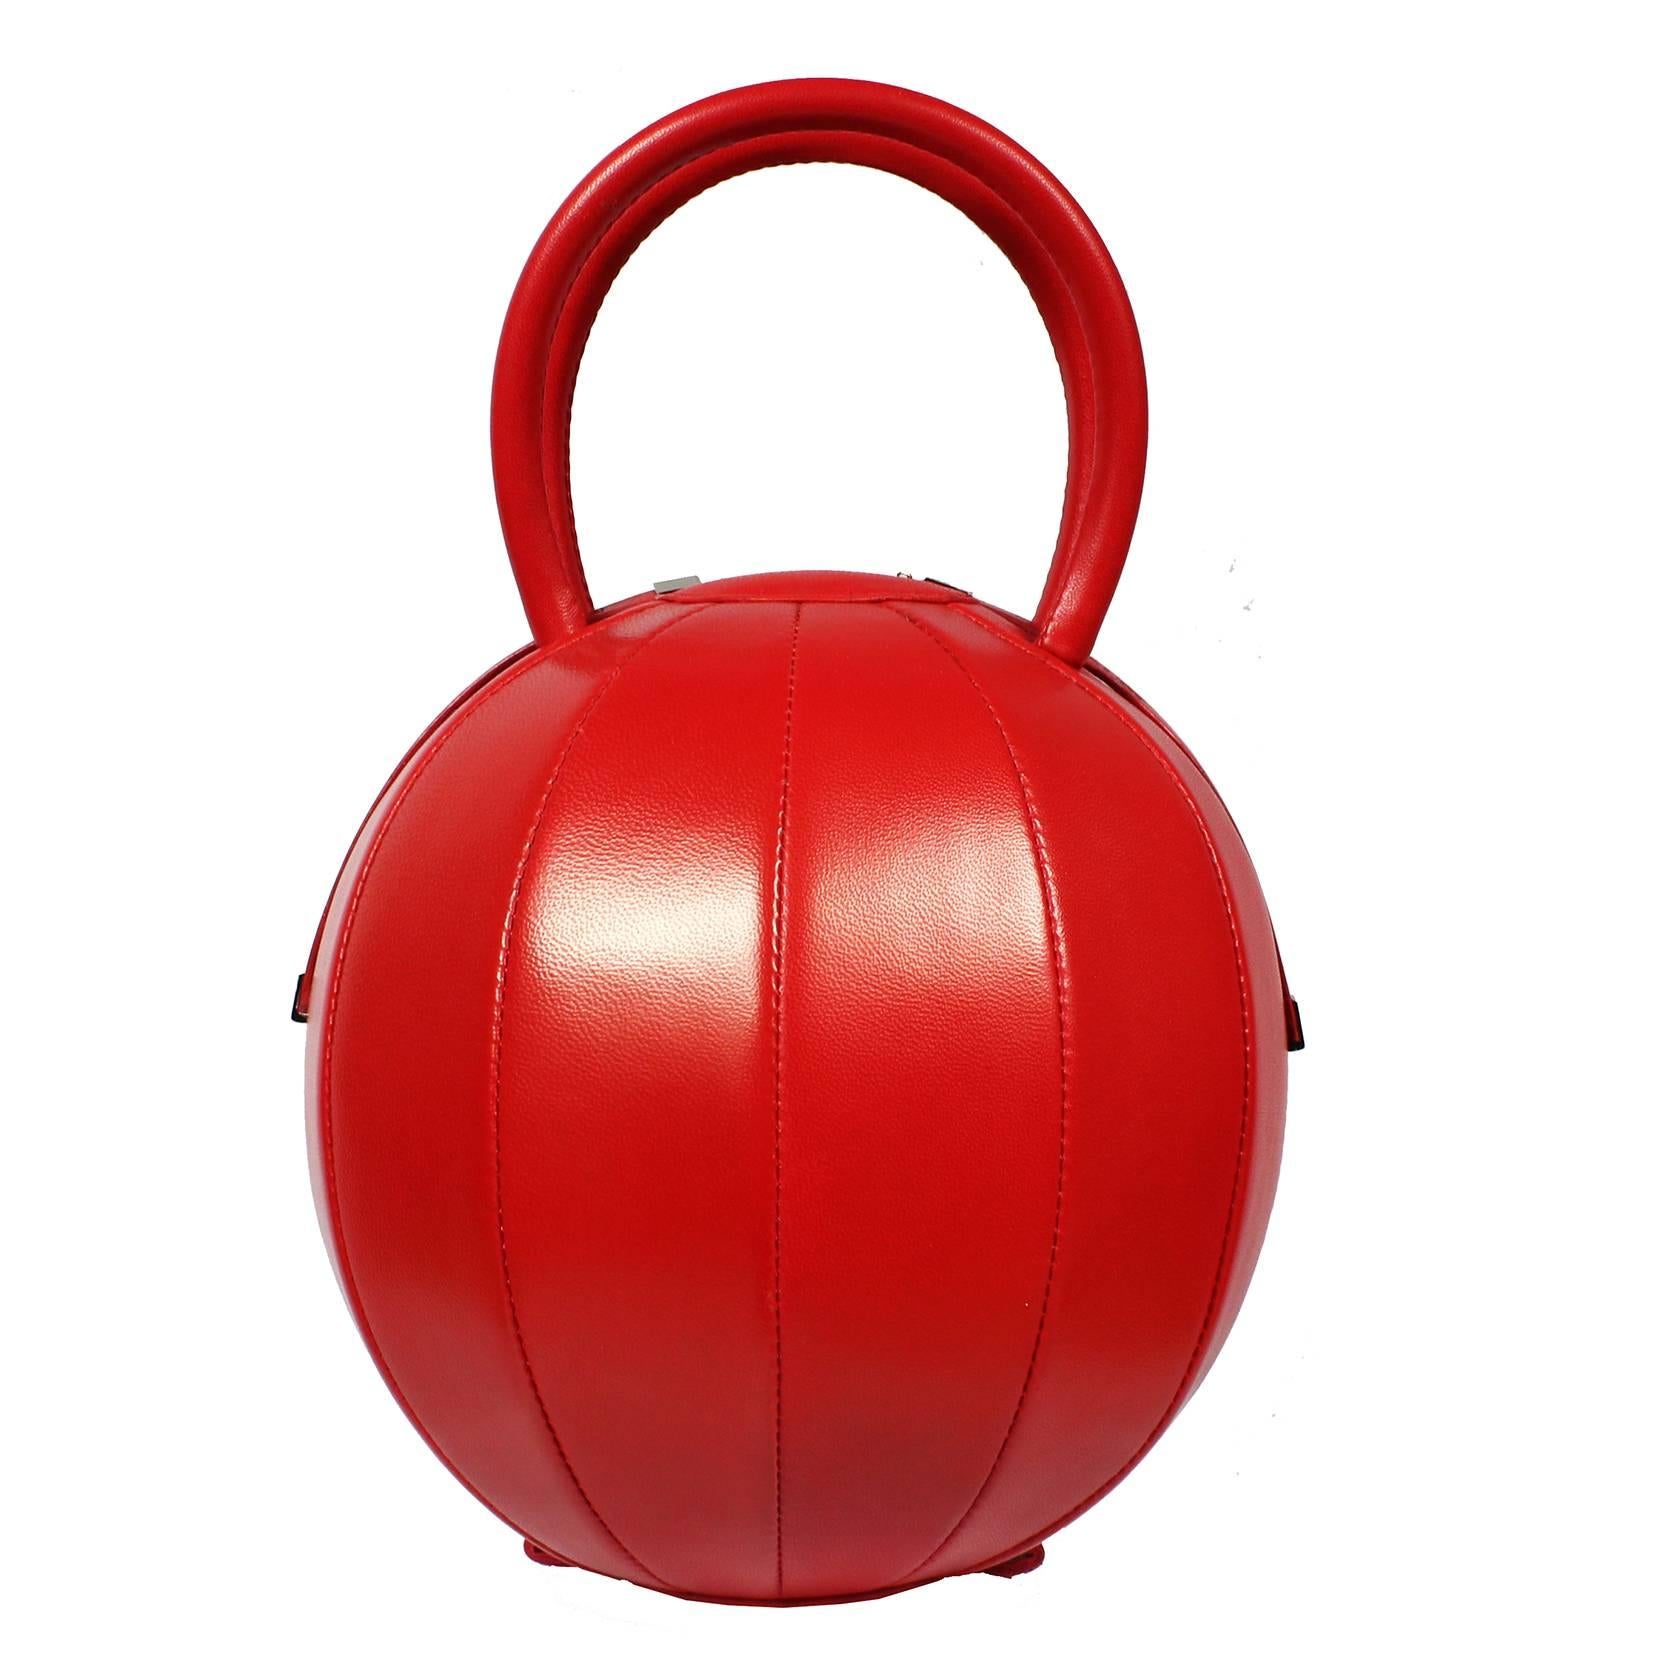 NitaSuri Pilo Red Leather Sphere Handbag For Sale